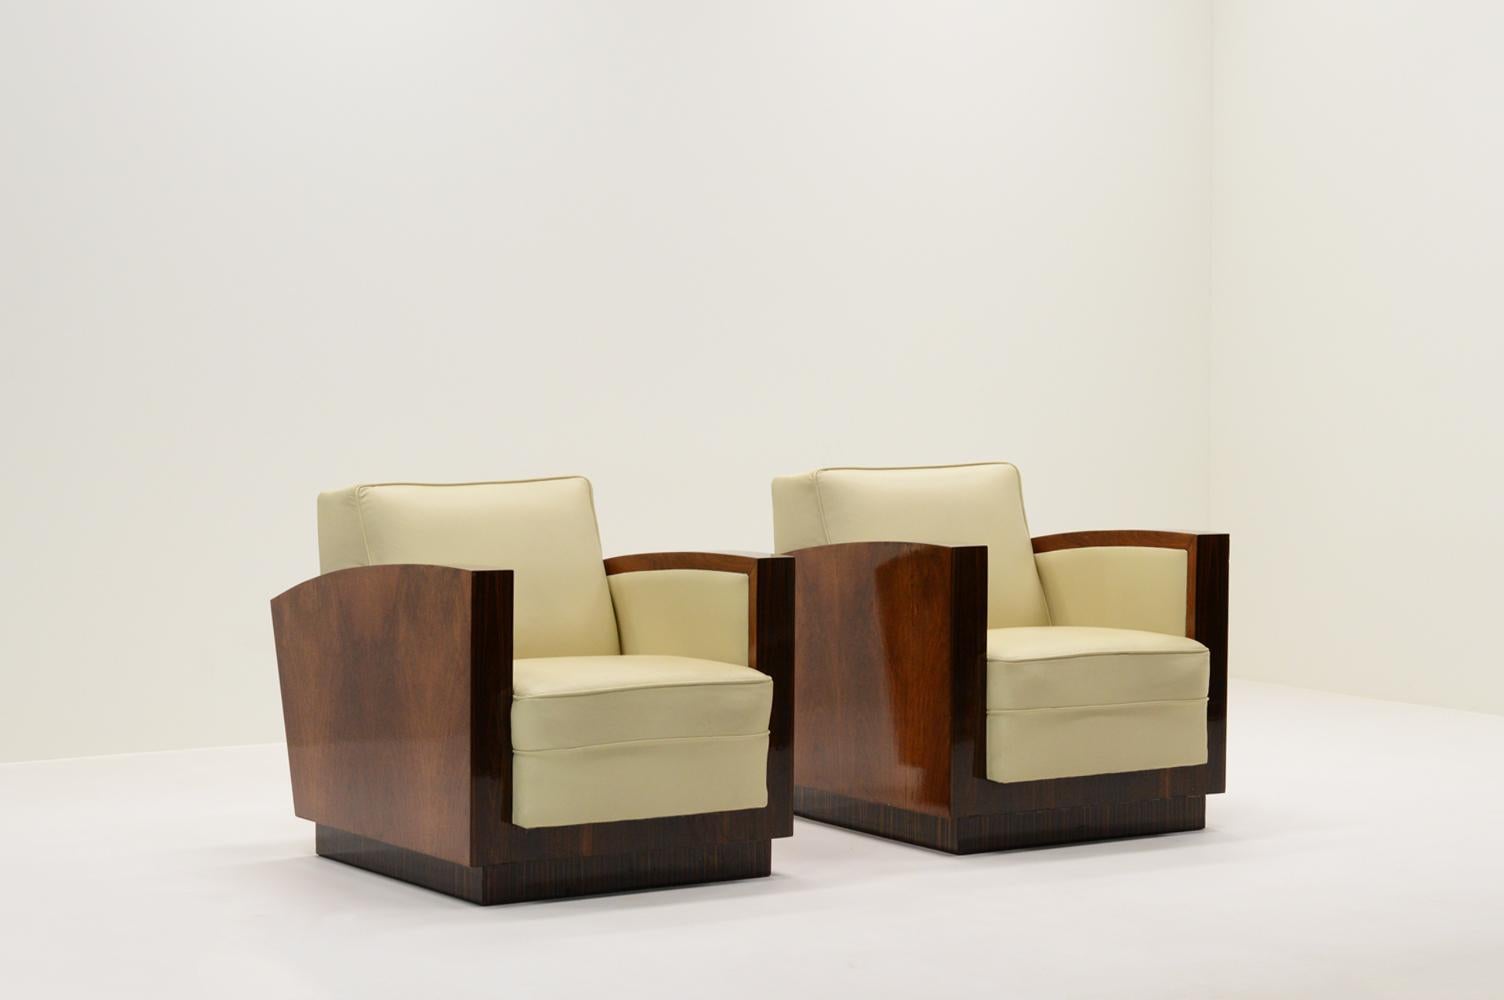 Ensemble de 2 fauteuils club Art déco, France, années 1930 Les chaises sont fabriquées avec 3 types de placage de bois dur tropical laqué et revêtues d'un cuir blanc crème. Design/One minimaliste et typique de l'art déco français. Usure conforme à